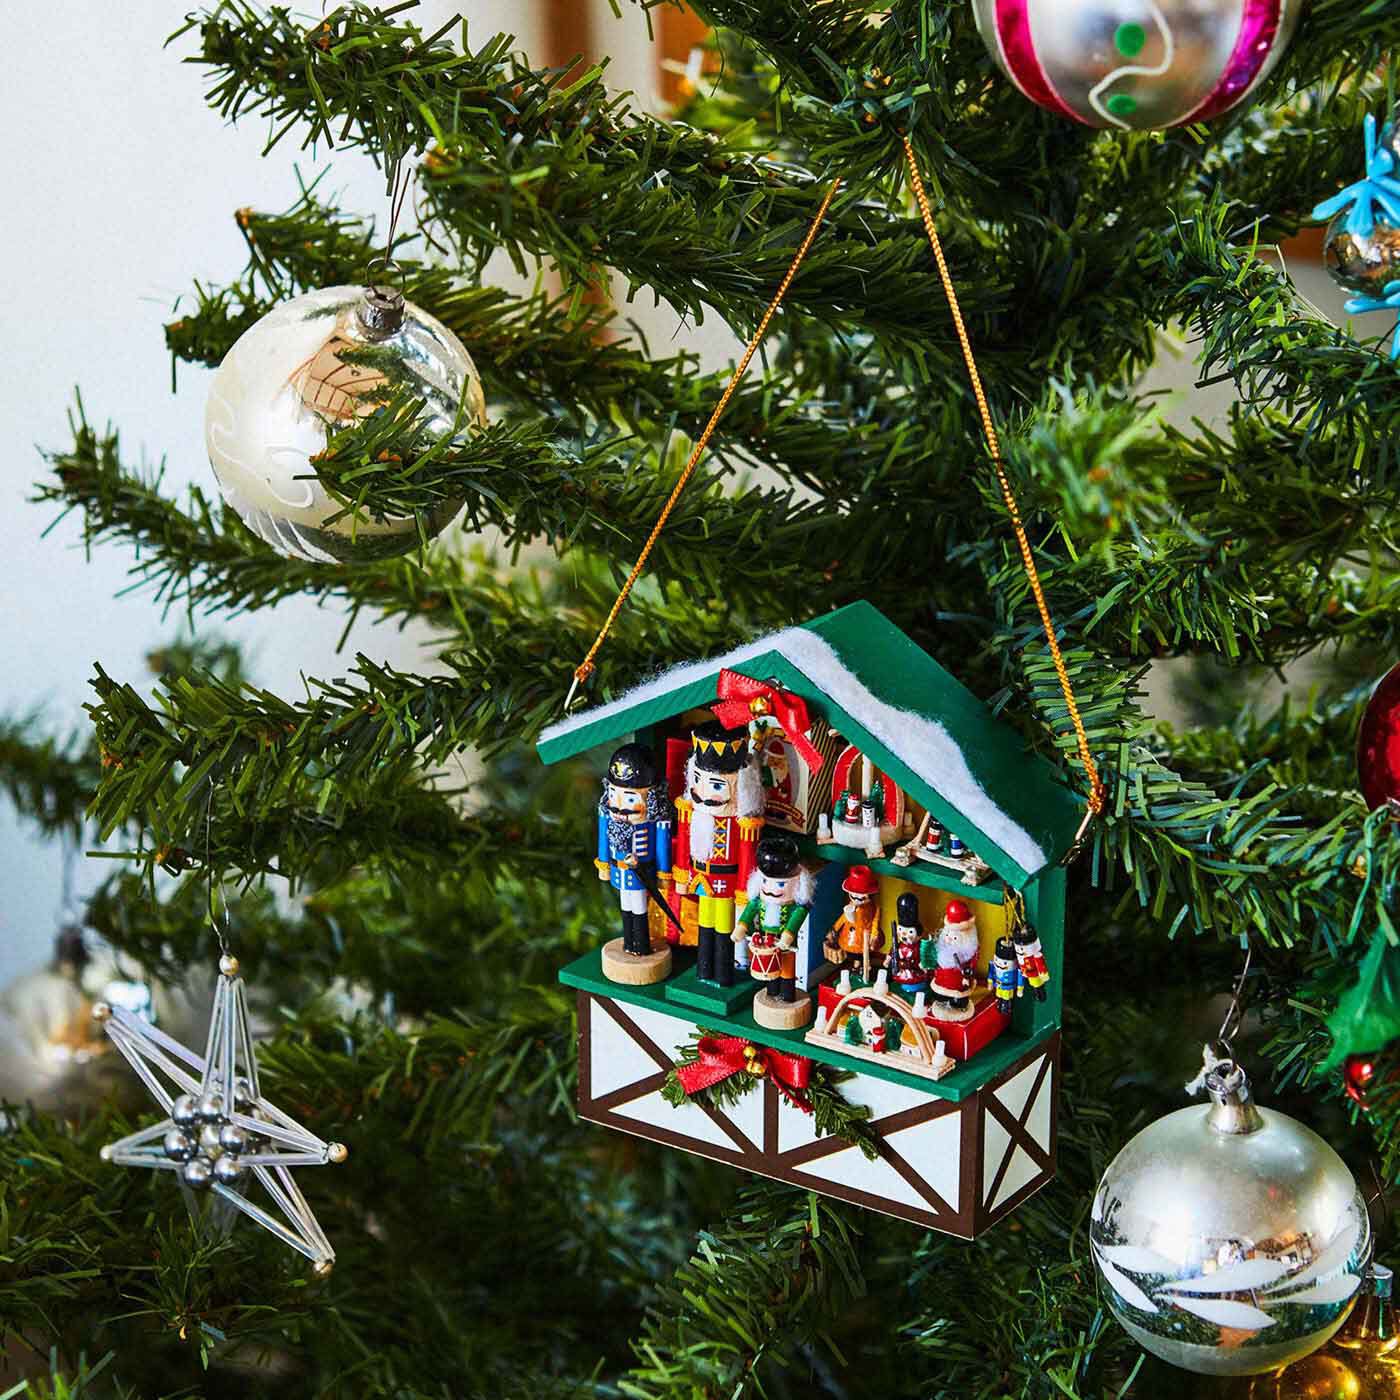 クリスマスオーナメントセット 小さな樹脂製 ミニチュア クリスマスツリーオーナメント サンタクロース 雪だるま 天使 小さなクリスマスツリー - 3